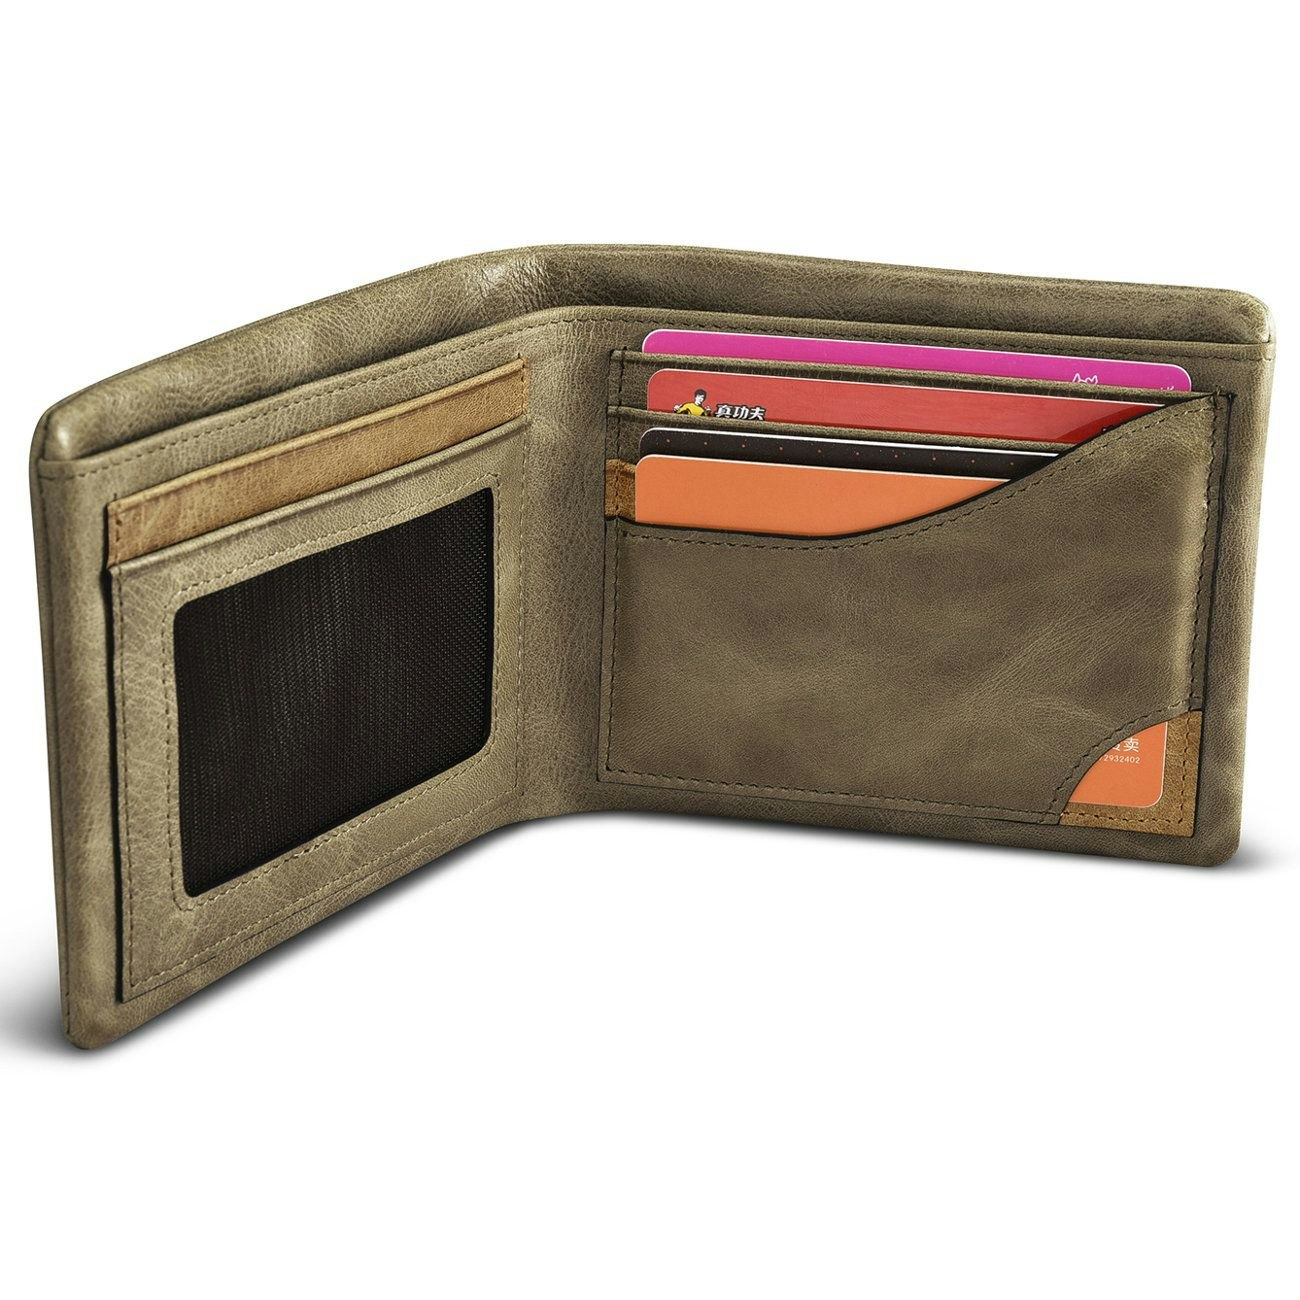 iCarer plånbok i khaki läder bild2